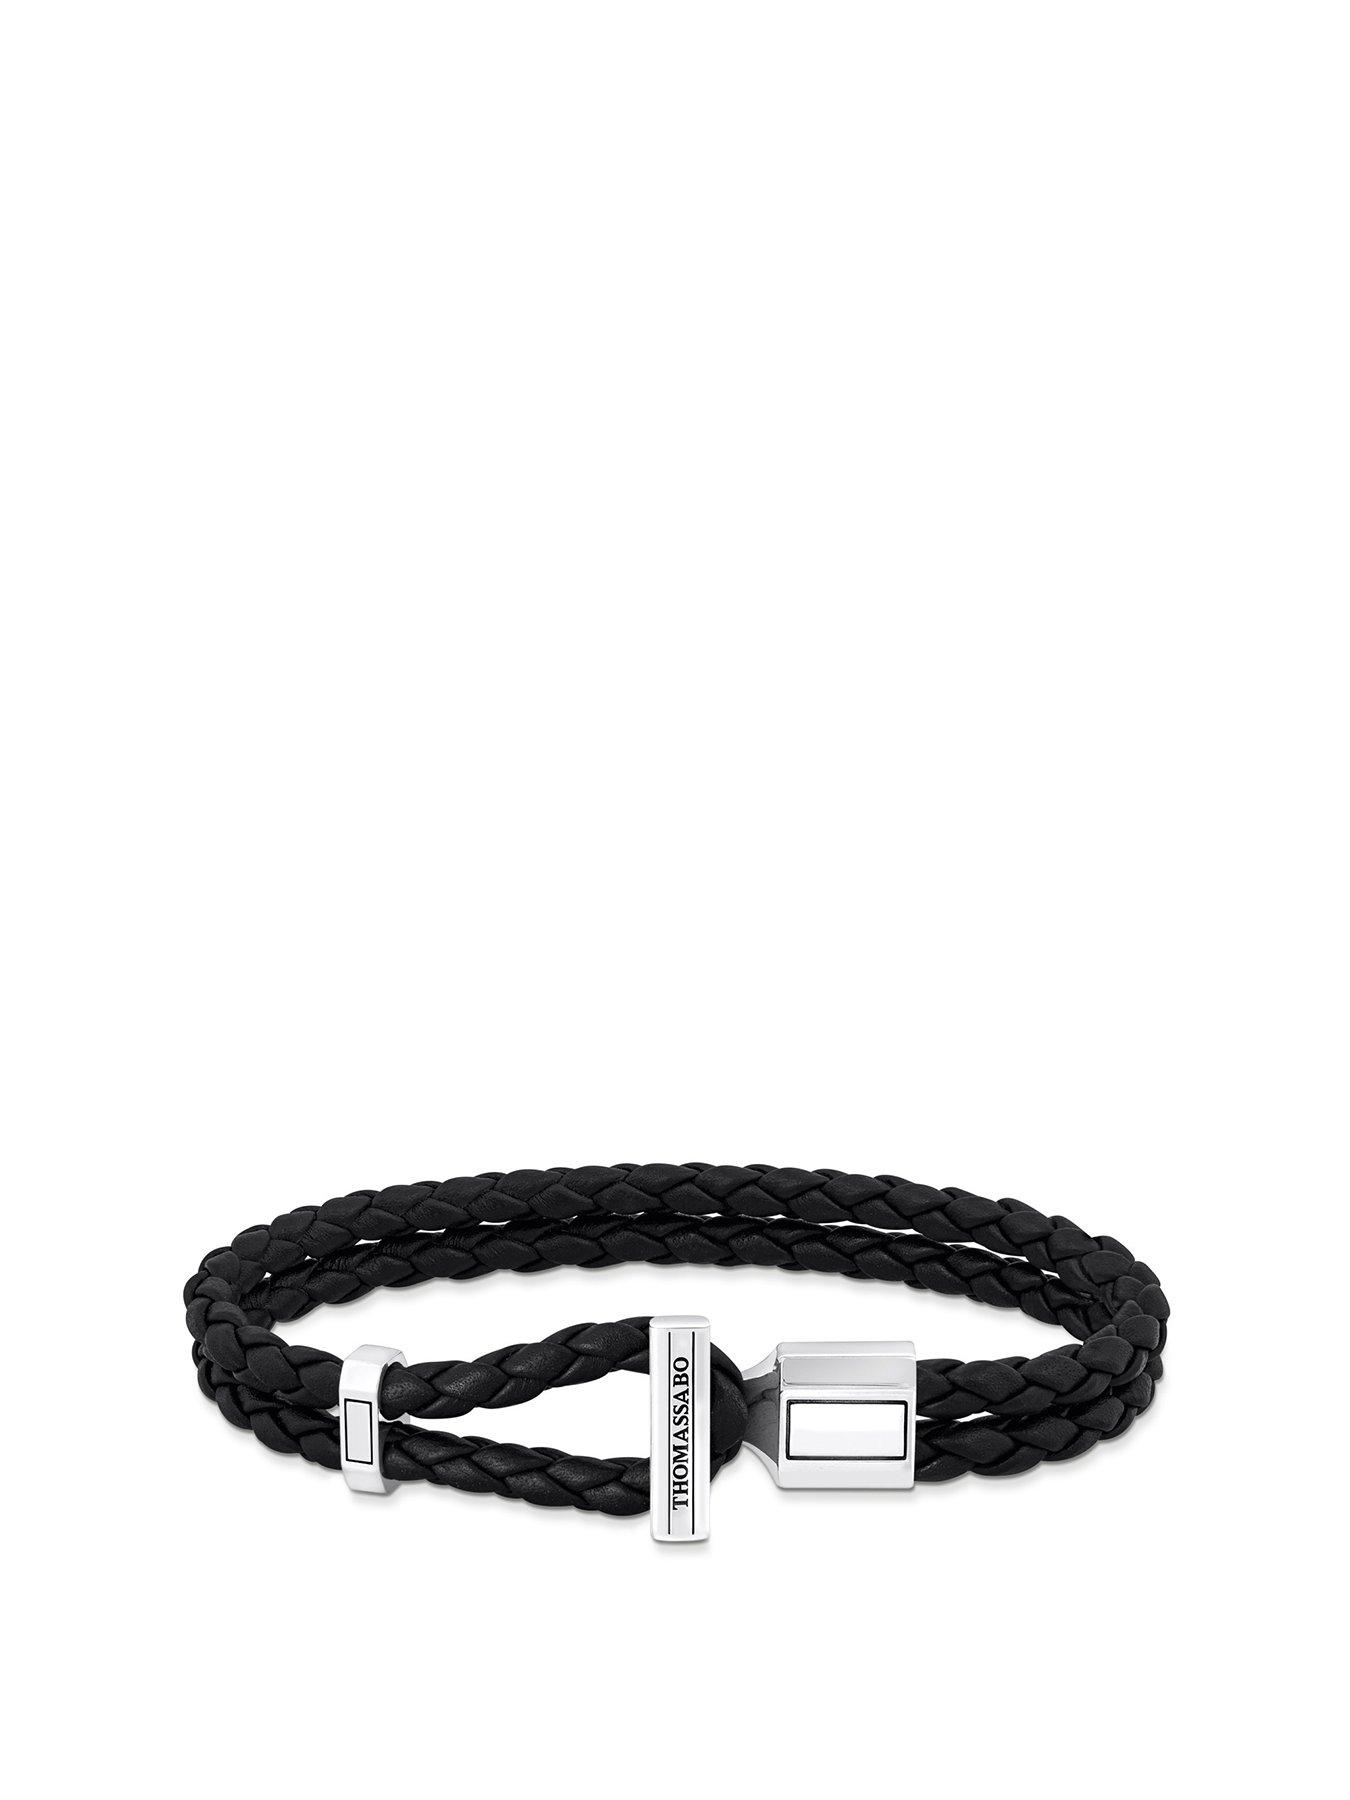 Product photograph of Thomas Sabo Unisex Basic Leather Bracelet - Black from very.co.uk